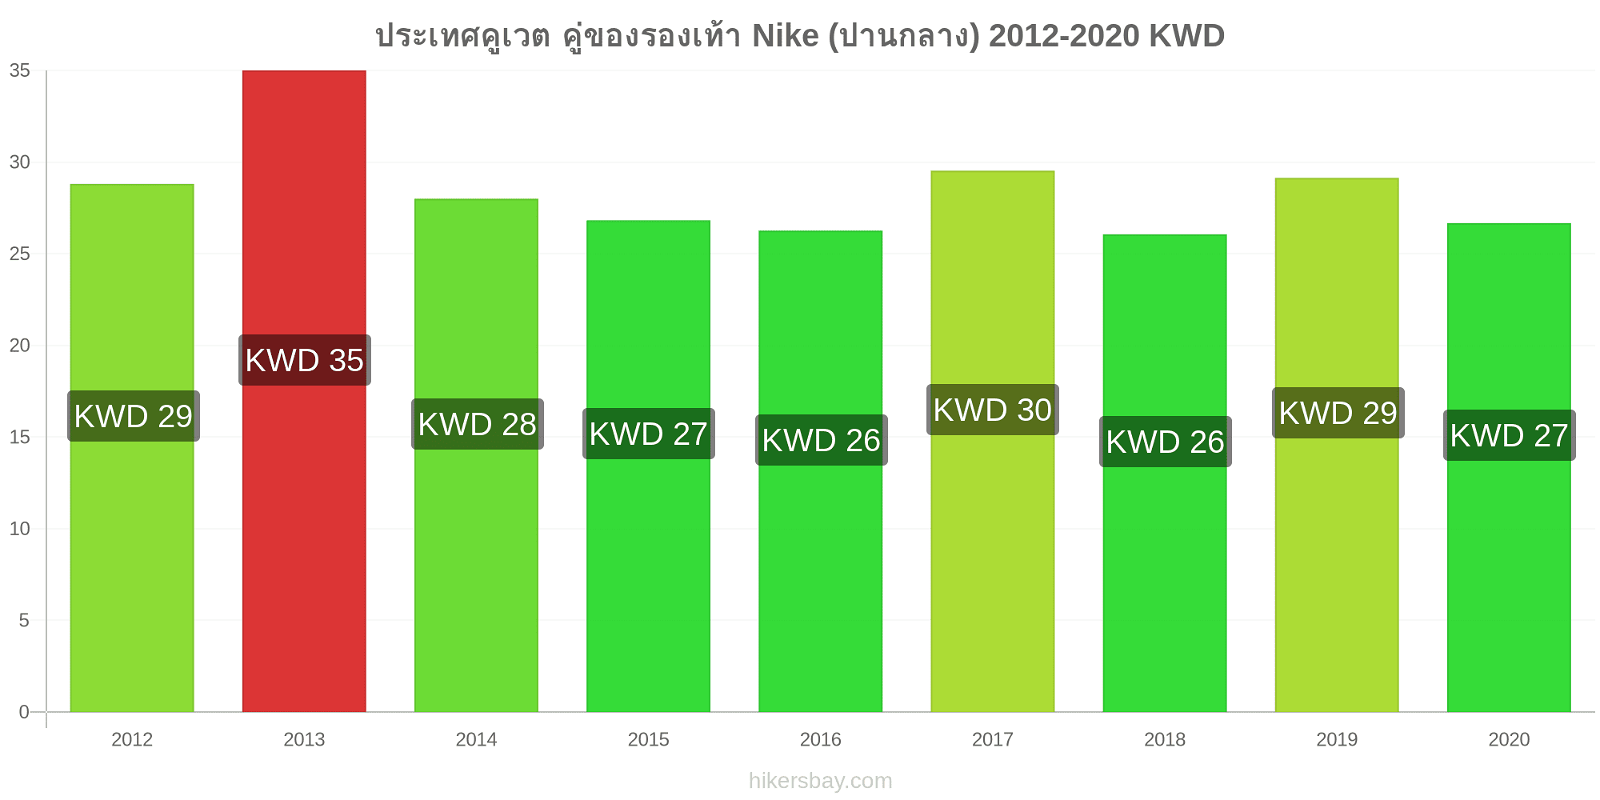 ประเทศคูเวต การเปลี่ยนแปลงราคา คู่ของรองเท้า Nike (ปานกลาง) hikersbay.com